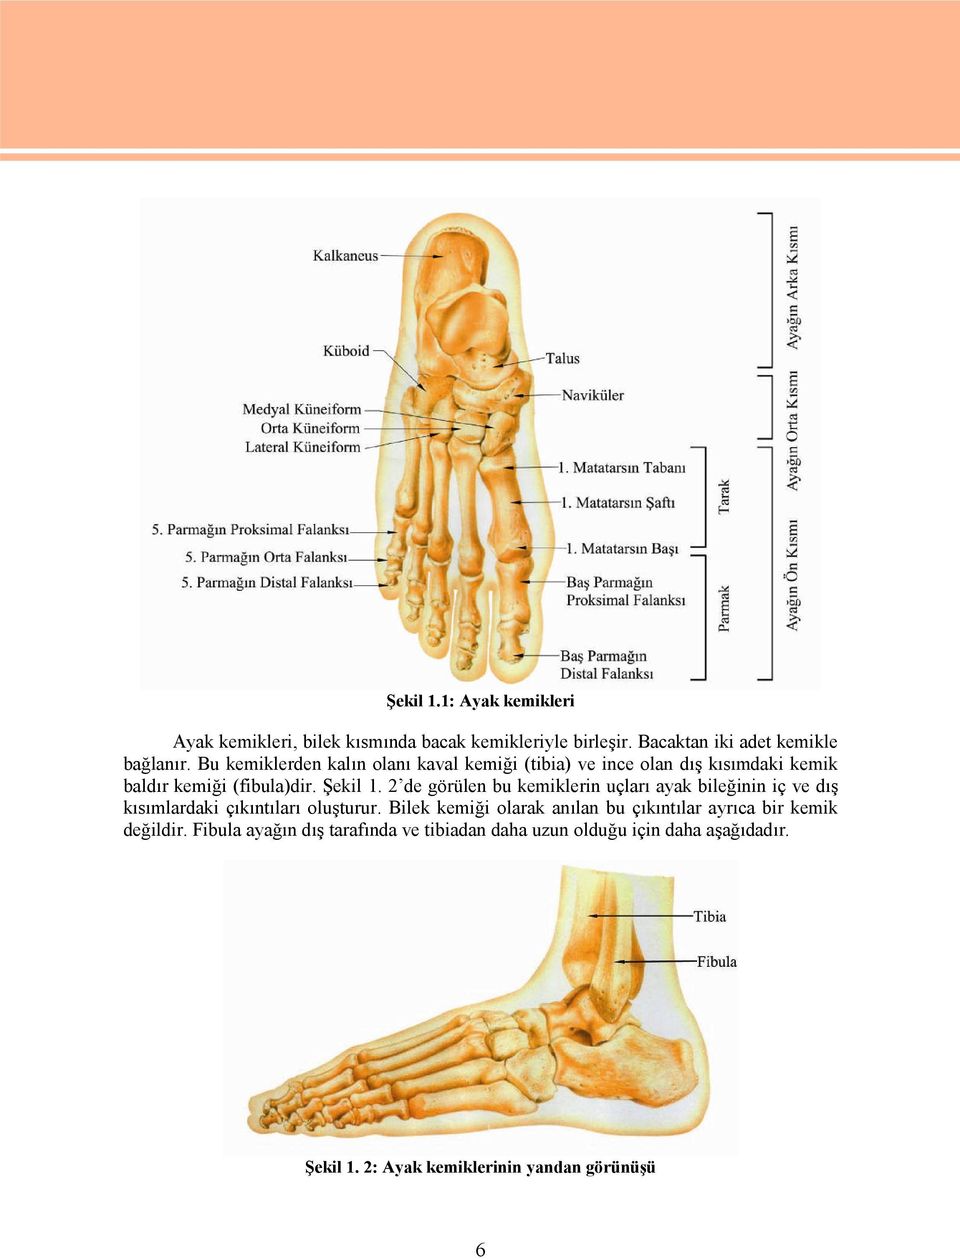 2 de görülen bu kemiklerin uçları ayak bileğinin iç ve dış kısımlardaki çıkıntıları oluşturur.